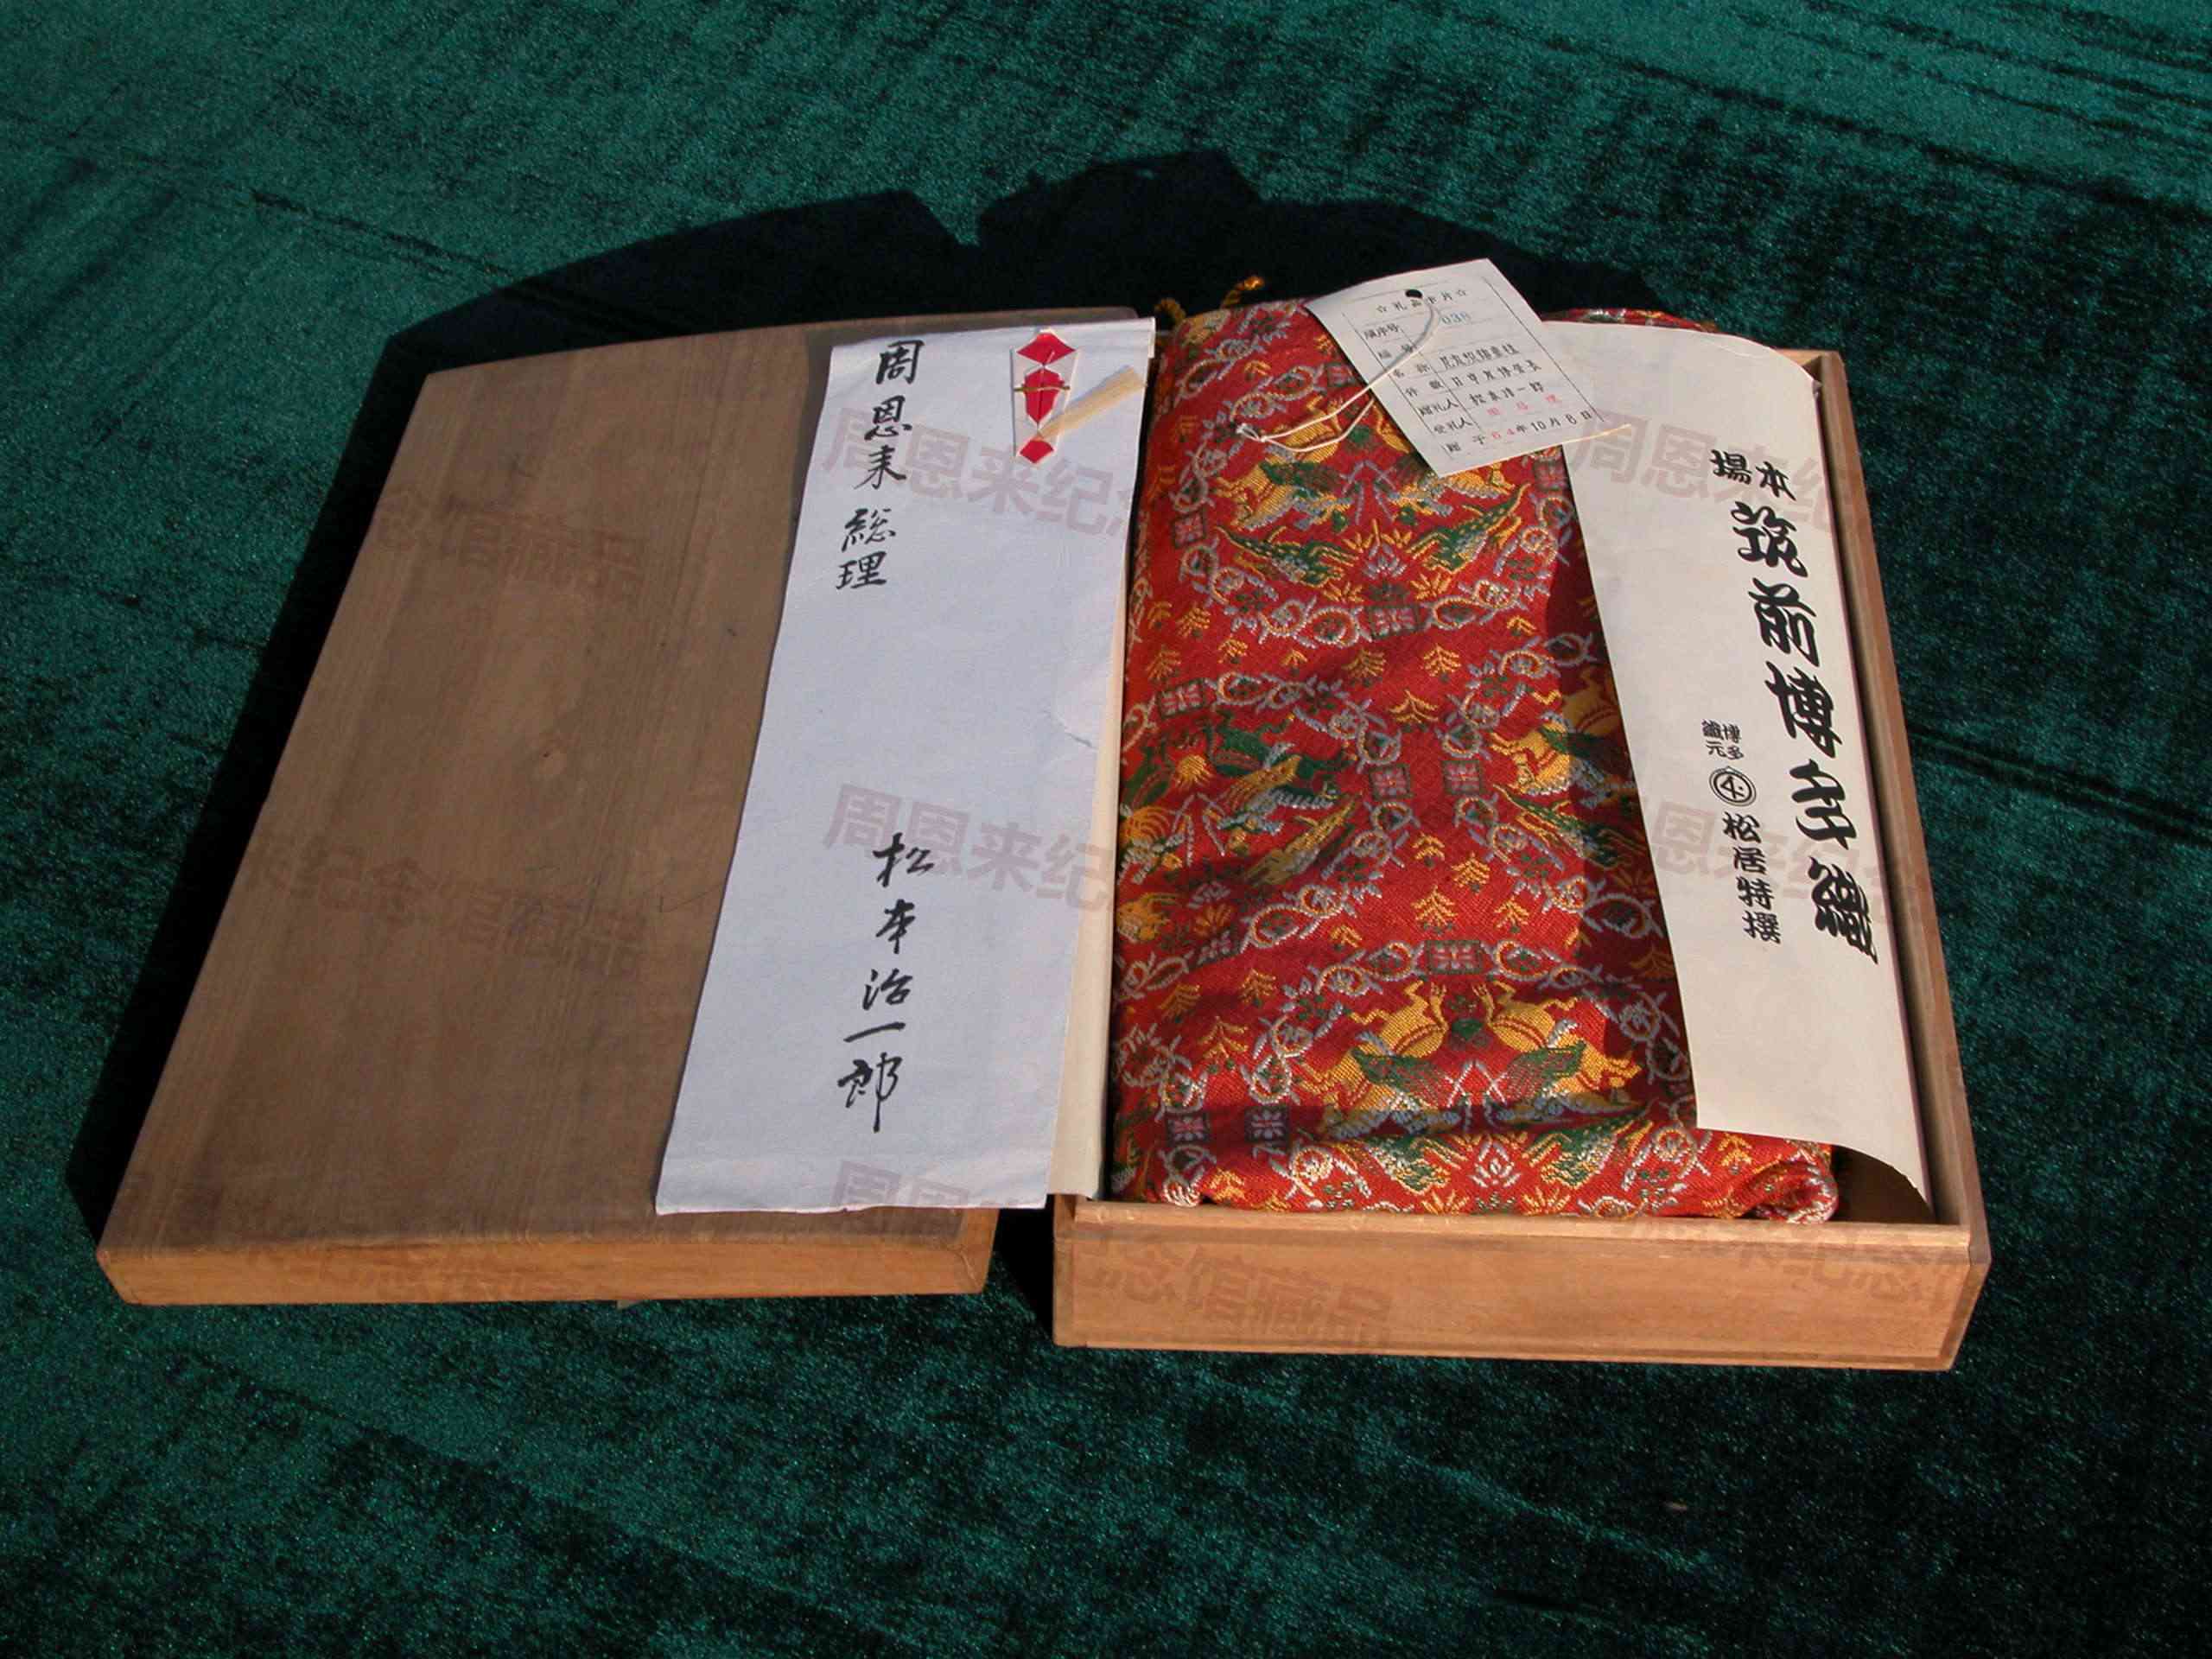 W200 1964年10月日中友协会长松本治一郞赠送周恩来的尼龙织锦桌毯.jpg